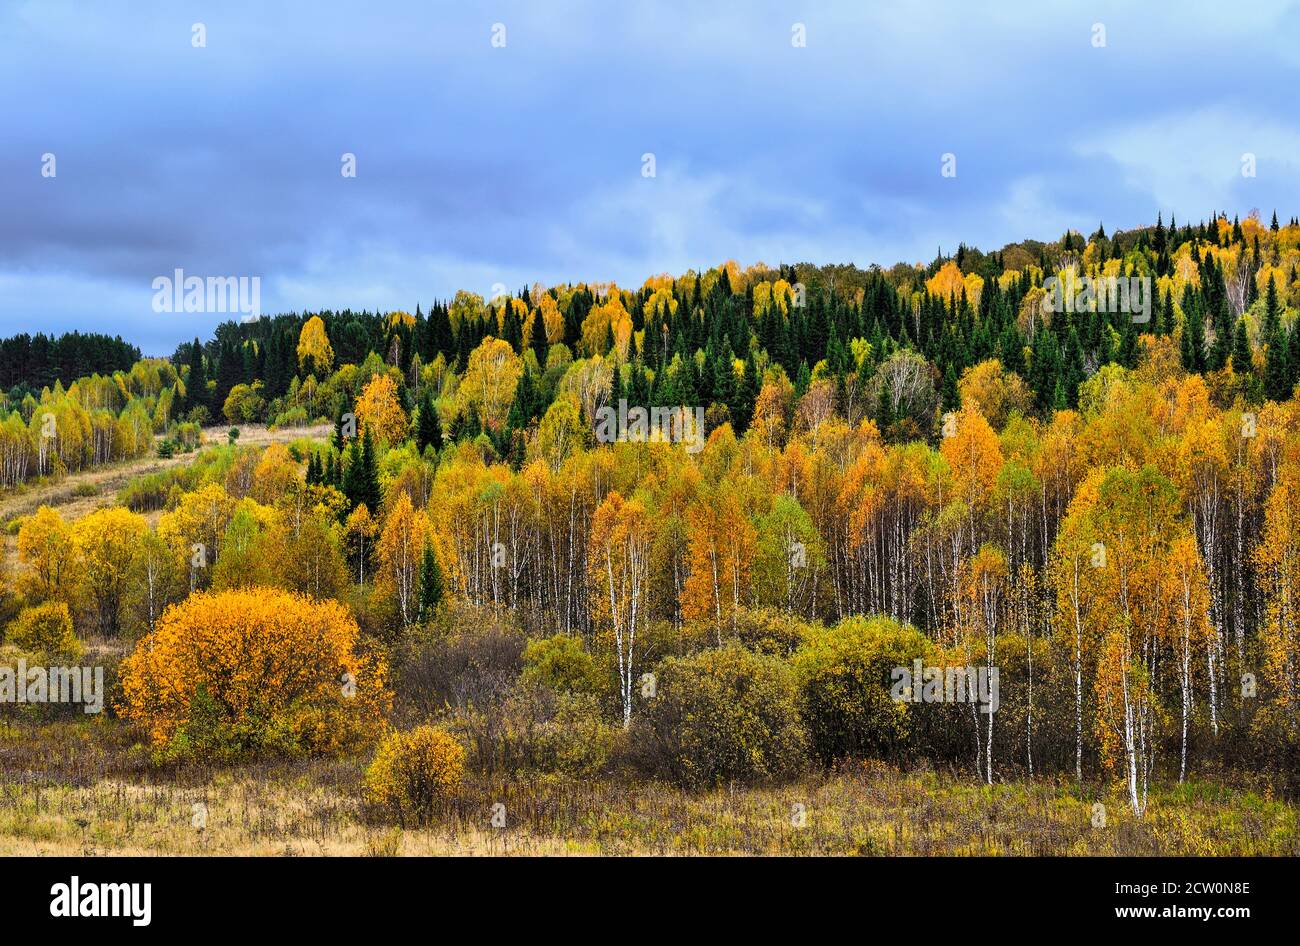 Helle und bunte Herbstlandschaft. Wald auf einem Hügel in einer luxuriösen Dekoration, golden, rot, orange Laub von deсiduous Bäumen, grünen Nadelbäumen Stockfoto